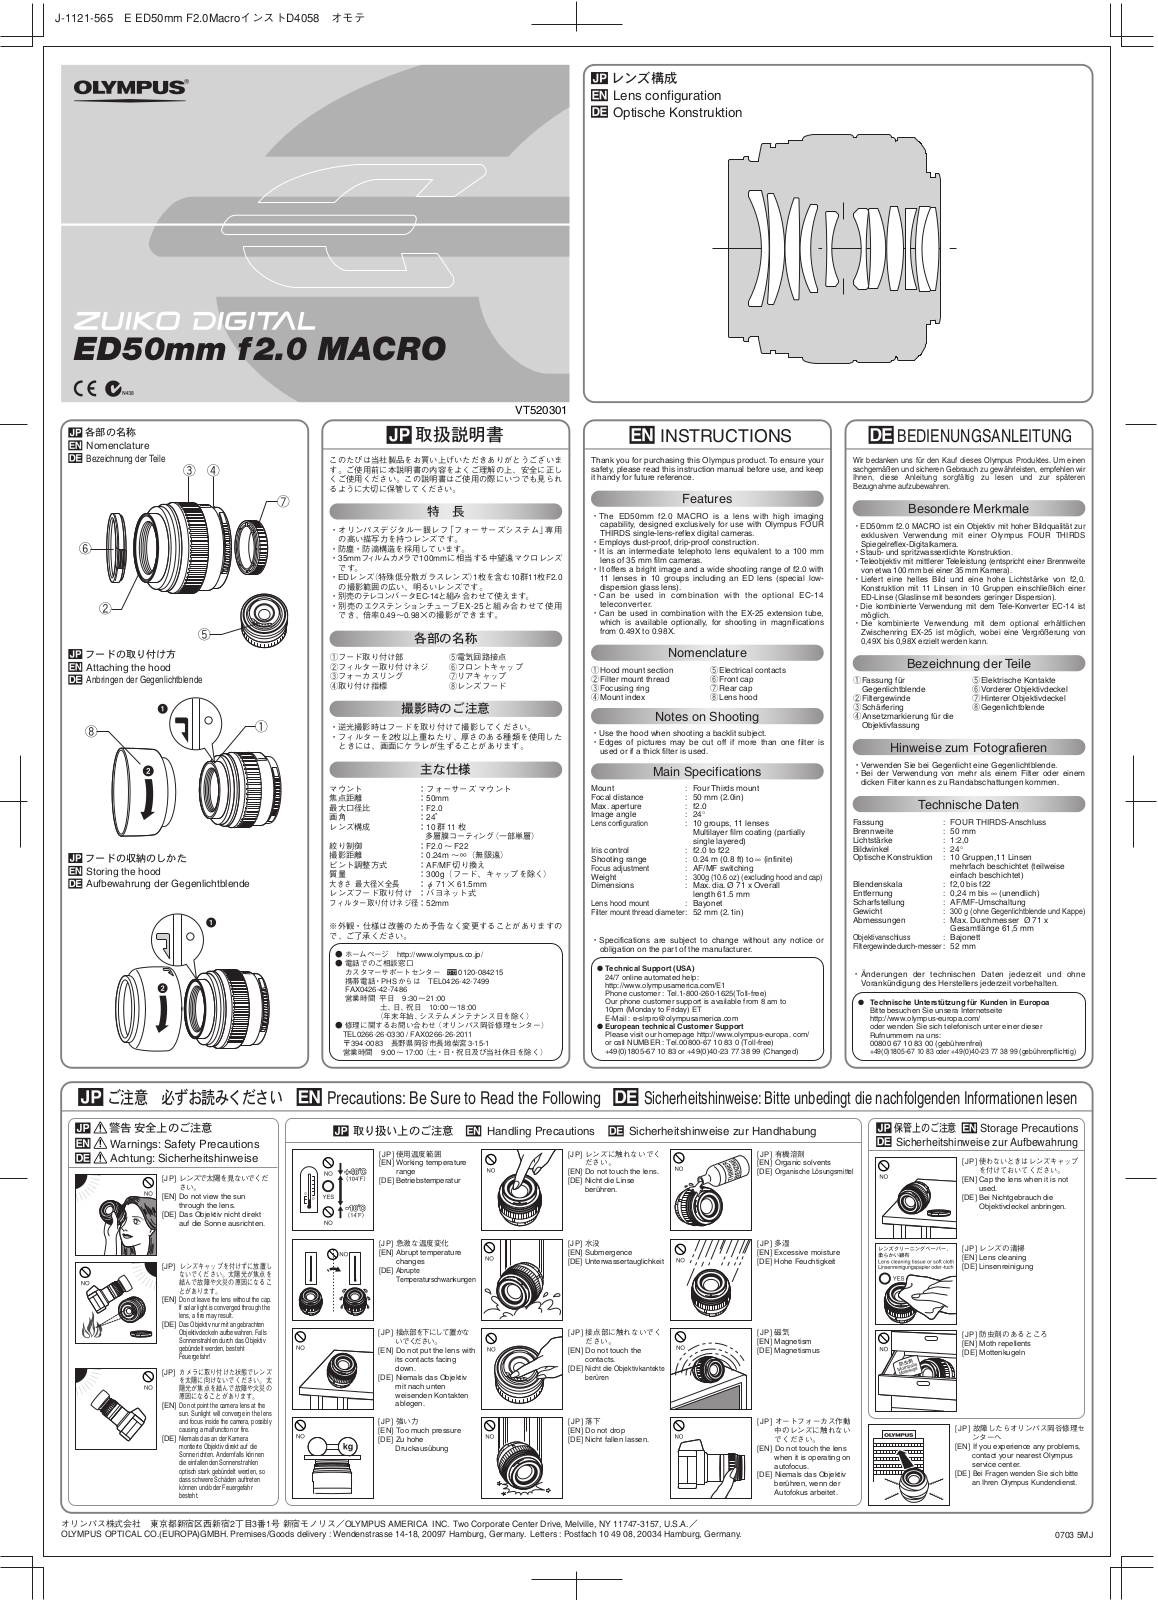 Olympus ZUIKO DIGITAL ED 50mm F2.0 Macro Instruction Manual